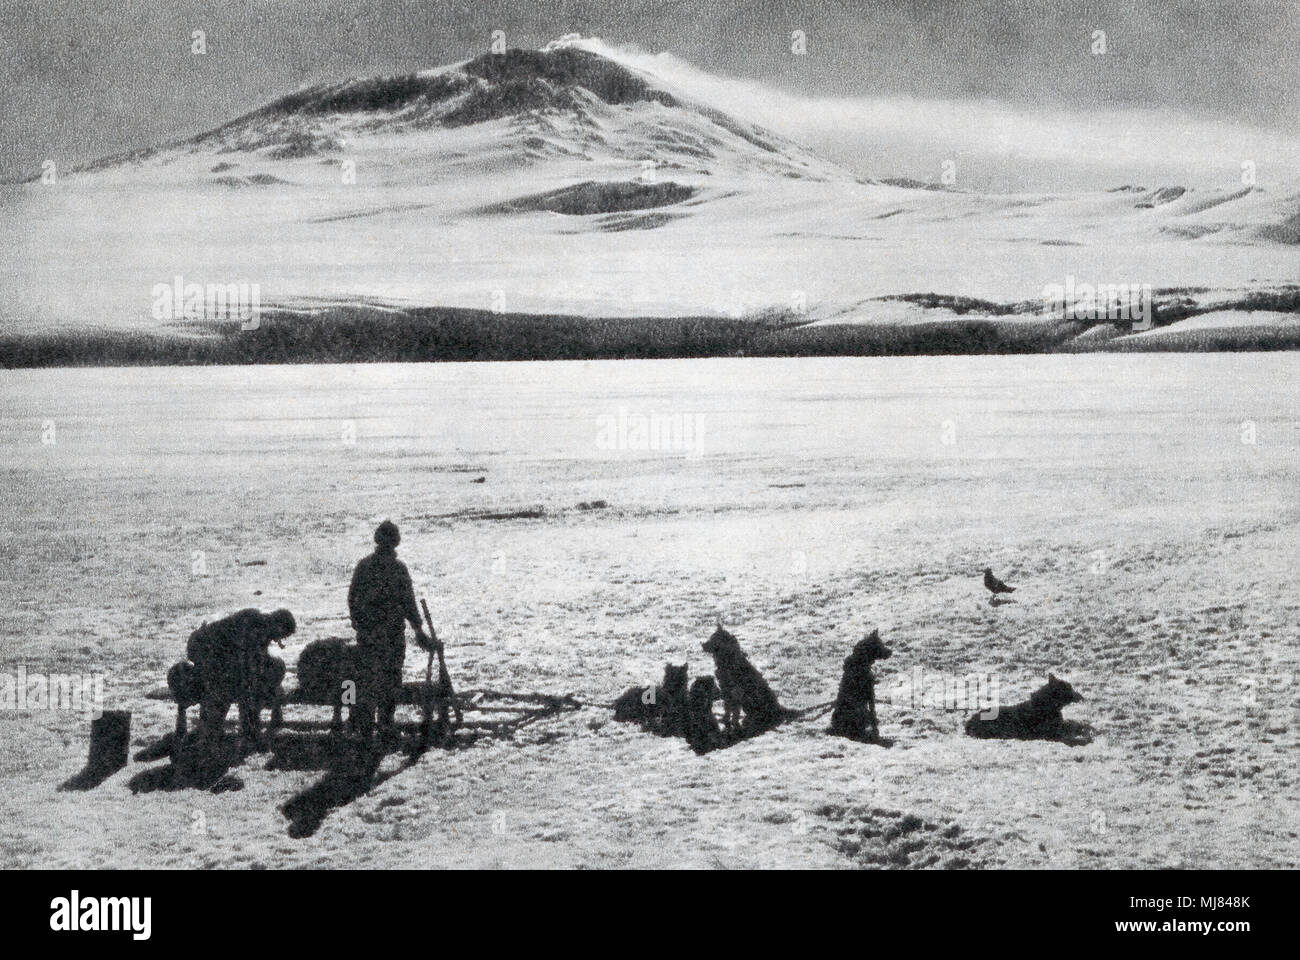 Hundeschlitten, anzeigen Mount Erebus im Hintergrund. Nach einem Foto von Ponting während Robert Falcon Scott Terra Nova Antarktis Expedition, 1910-1913. Von den britischen Polarforscher, veröffentlicht 1943. Stockfoto